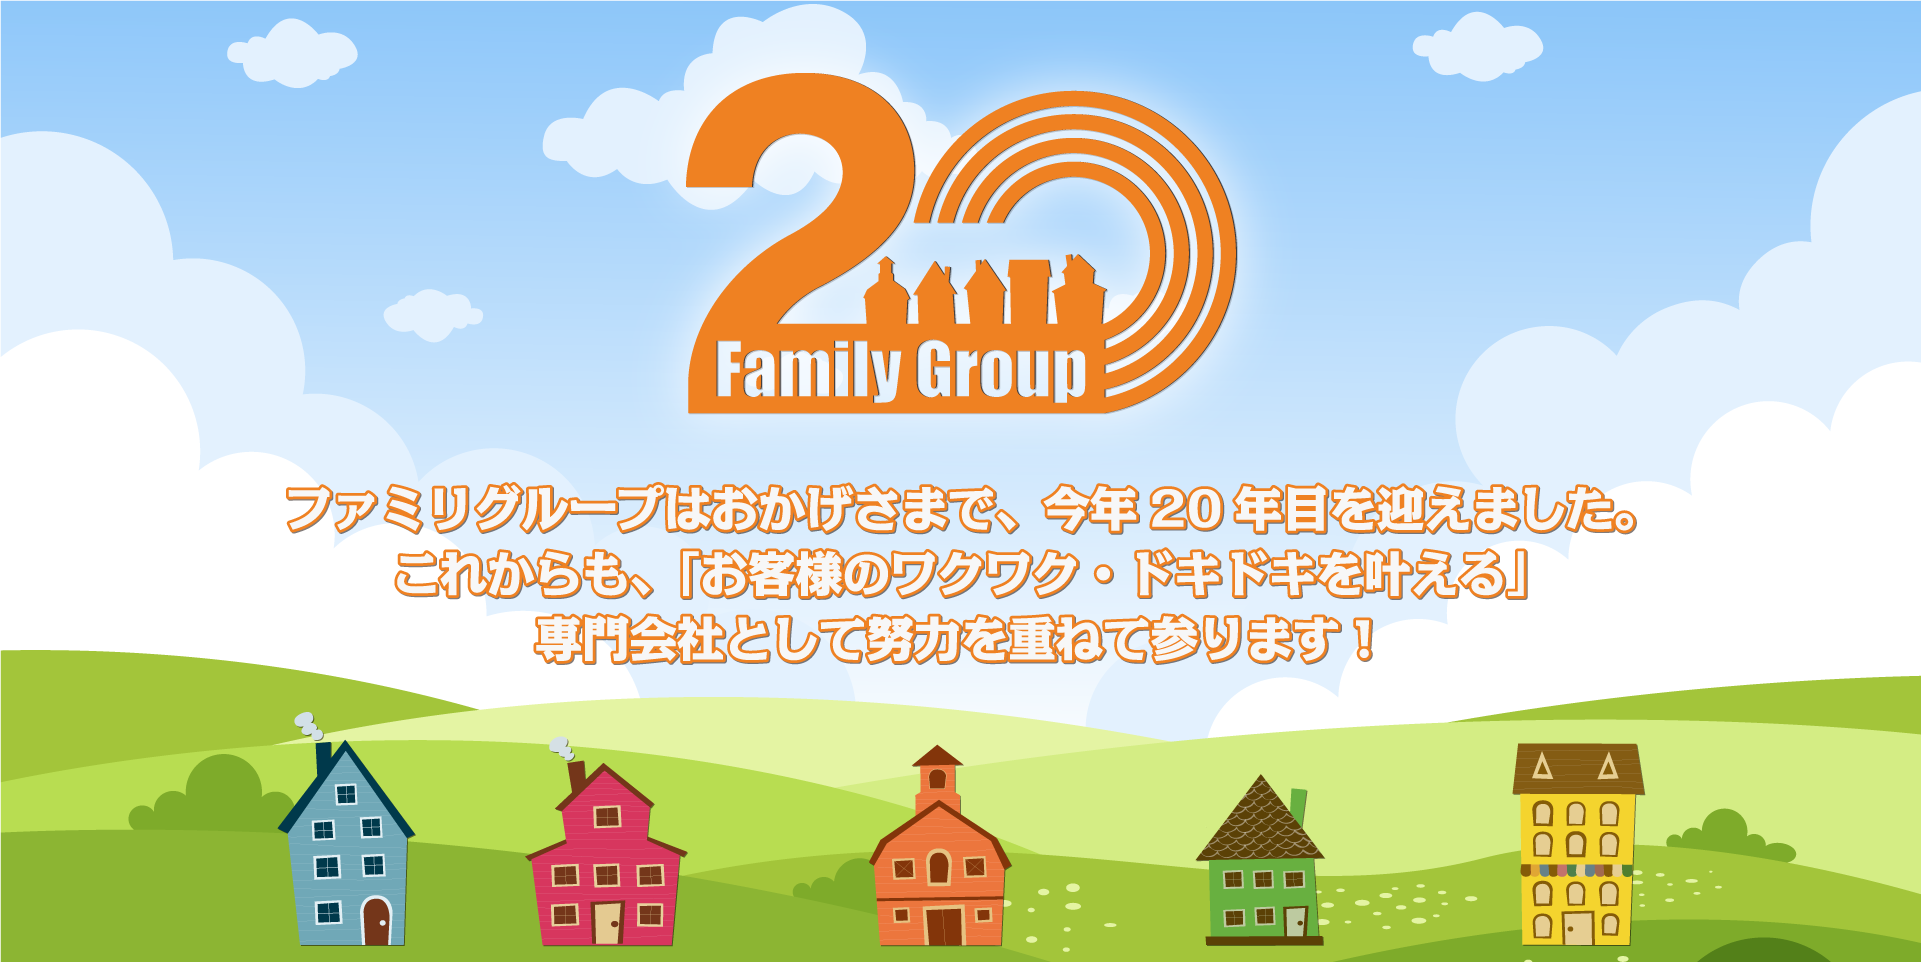 幅広い分野で活躍する企業へ Family Group